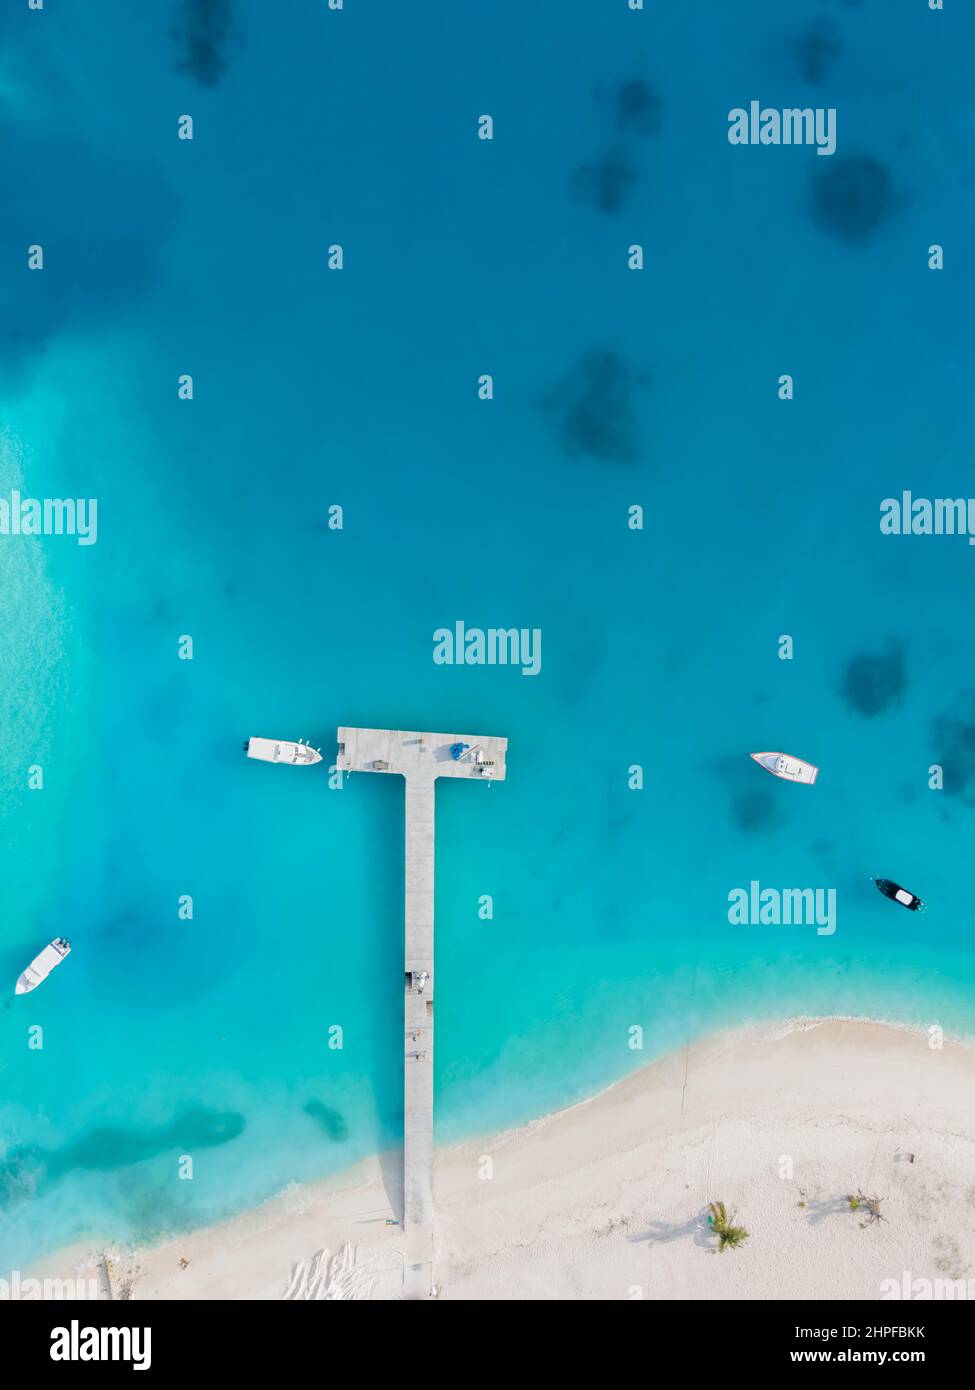 Playa de arena blanca y muelle portuario con agua azul y turquesa transparente, vista aérea desde la parte superior de la drona en la isla tropical de Maldivas. Hermosa va Foto de stock